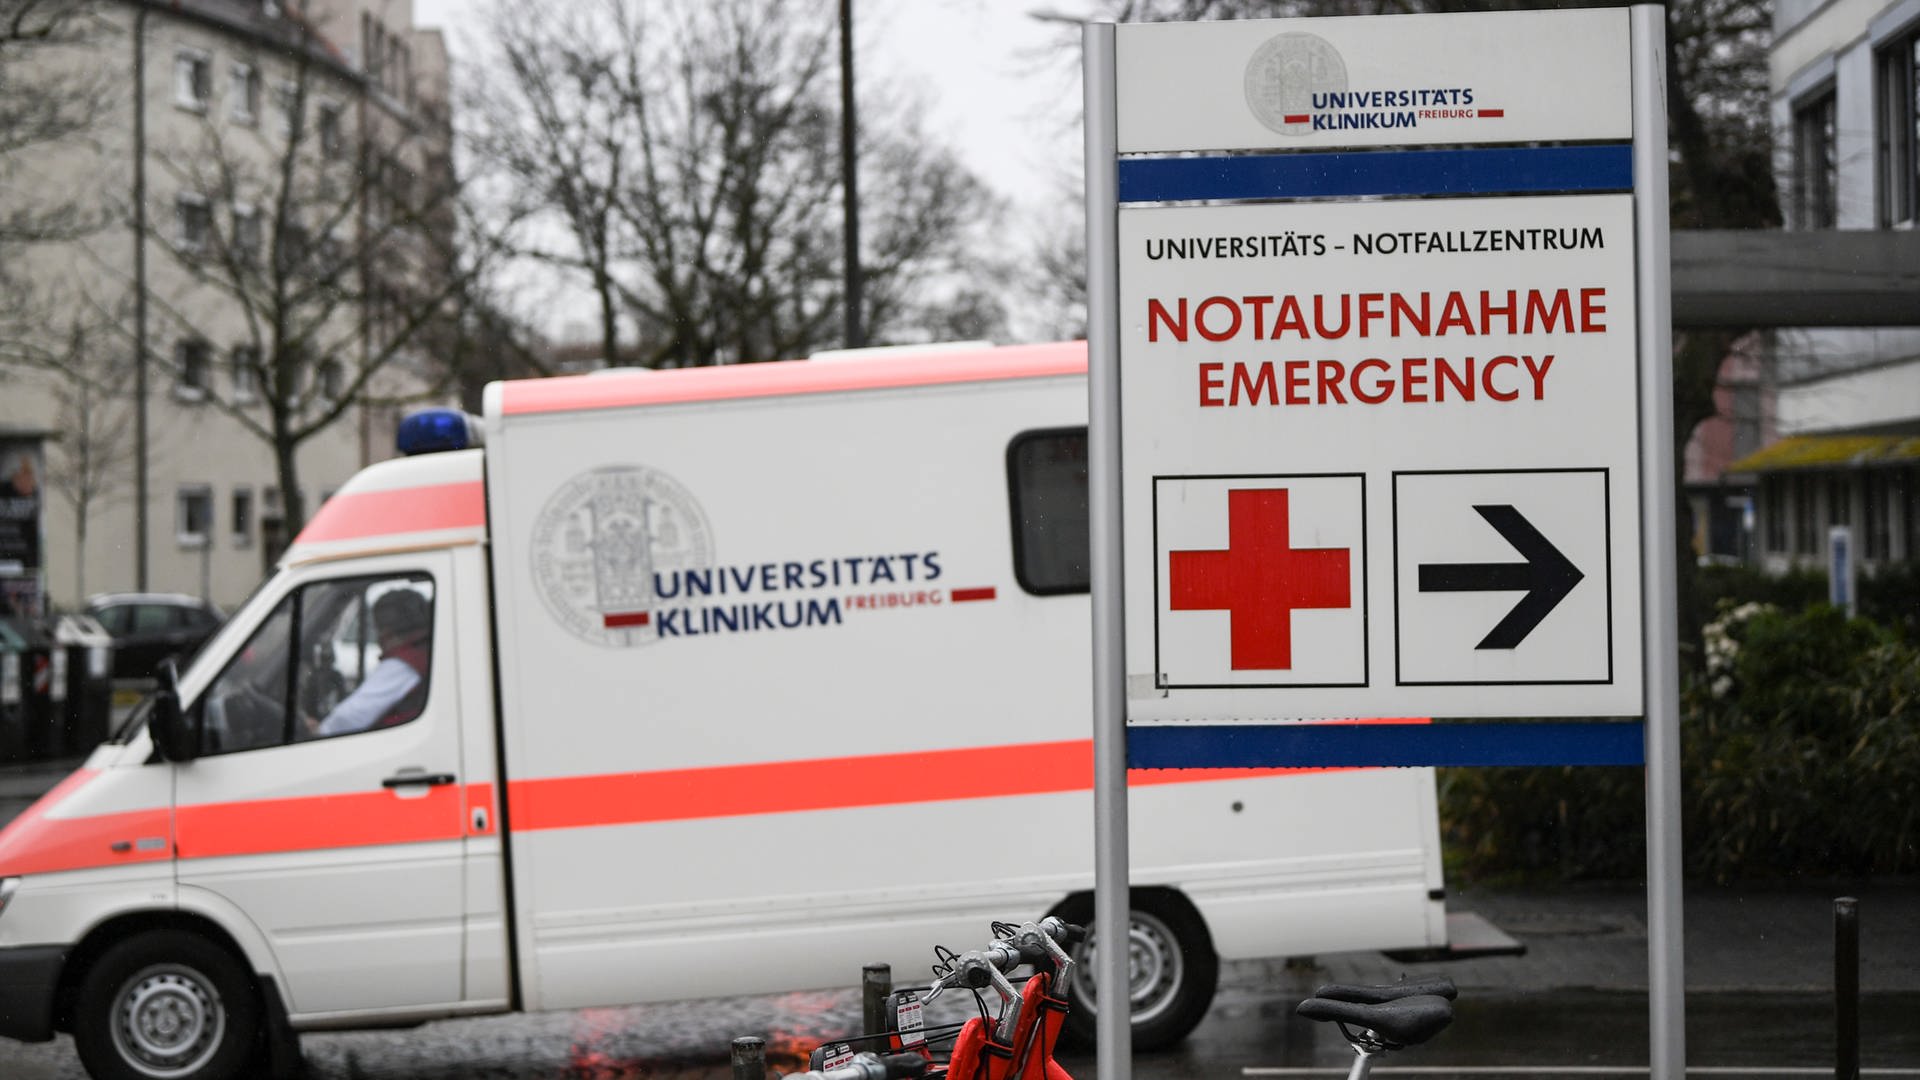 Freiburger Notaufnahme: Mann verletzt fünf Menschen mit einem Messer